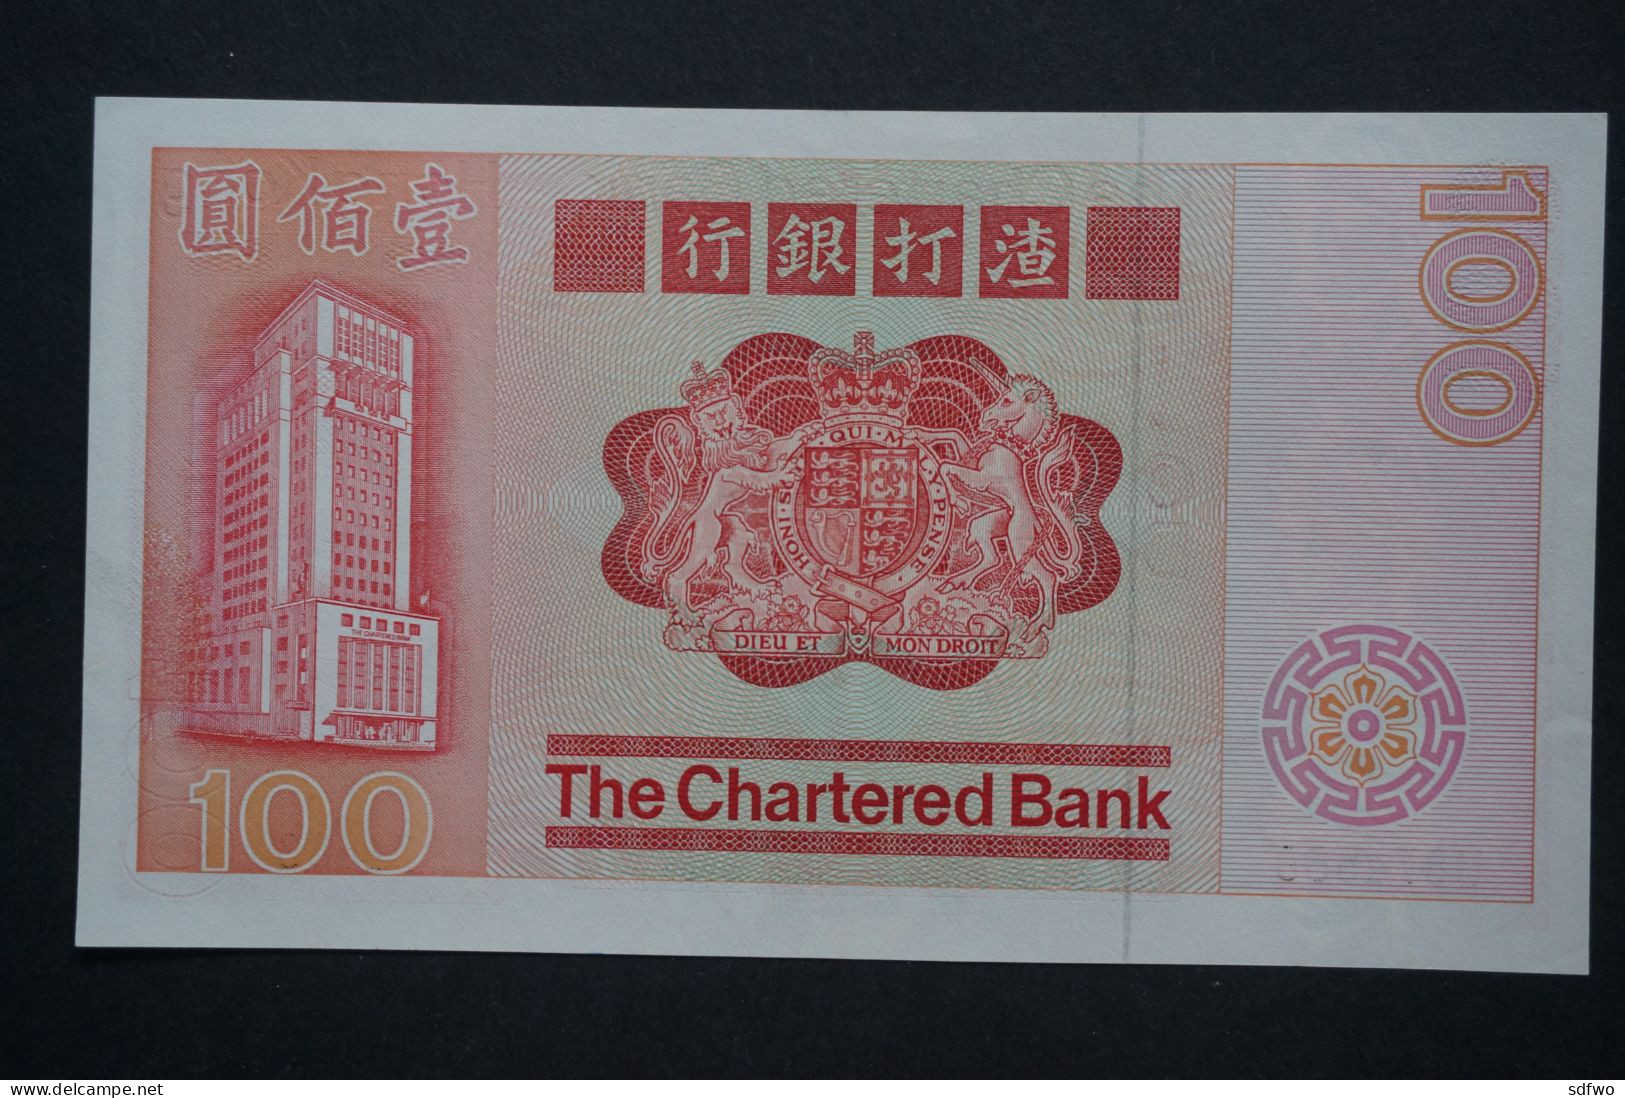 (Tv) 1982 HONG KONG OLD ISSUE - THE CHARTERED BANK 100 DOLLARS - #U874,568 - Hongkong